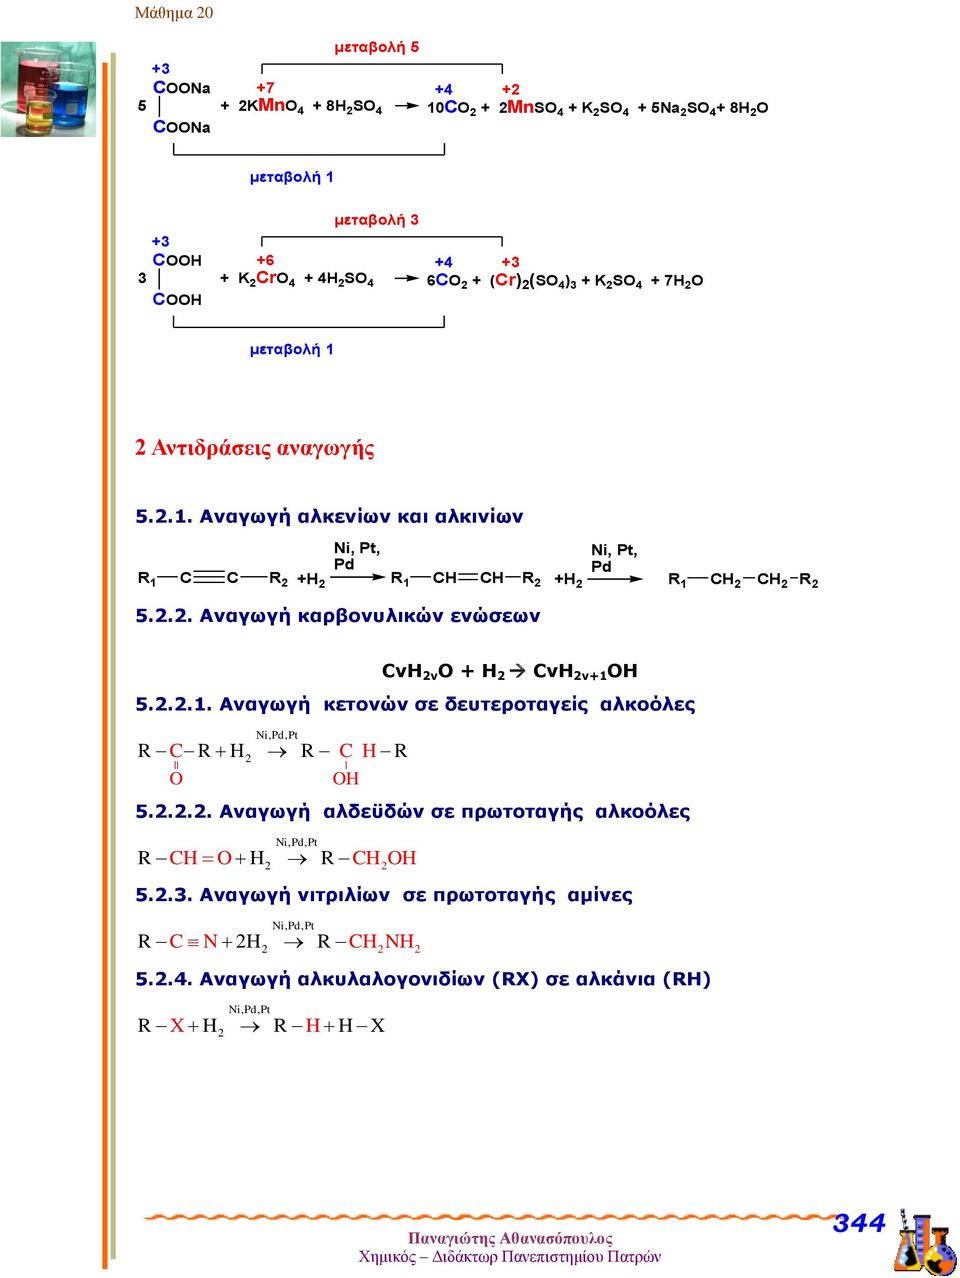 .. Αναγωγή καρβονυλικών ενώσεων CνΗ ν Ο + Η CνΗ ν+1 ΟΗ 5...1. Αναγωγή κετονών σε δευτεροταγείς αλκοόλες Ni,Pd, Pt R C R R C R O O 5.